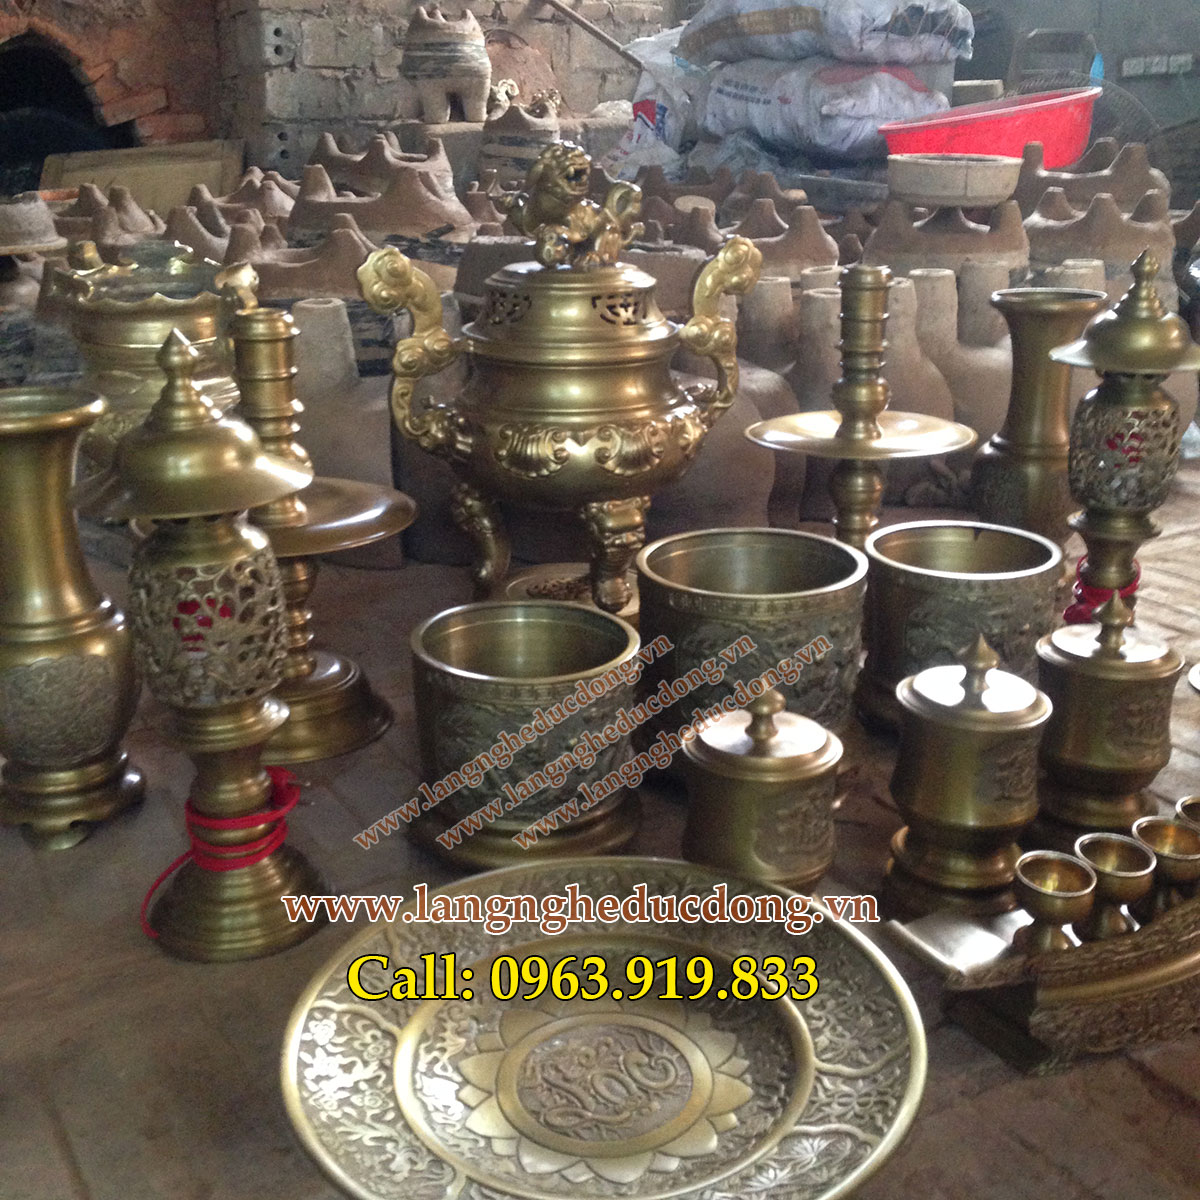 langngheducdong.vn - Bộ đồ thờ cúng đầy đủ, Bộ đồ thờ trang trí bàn thờ phù hợp bàn thờ 176 đến 197cm